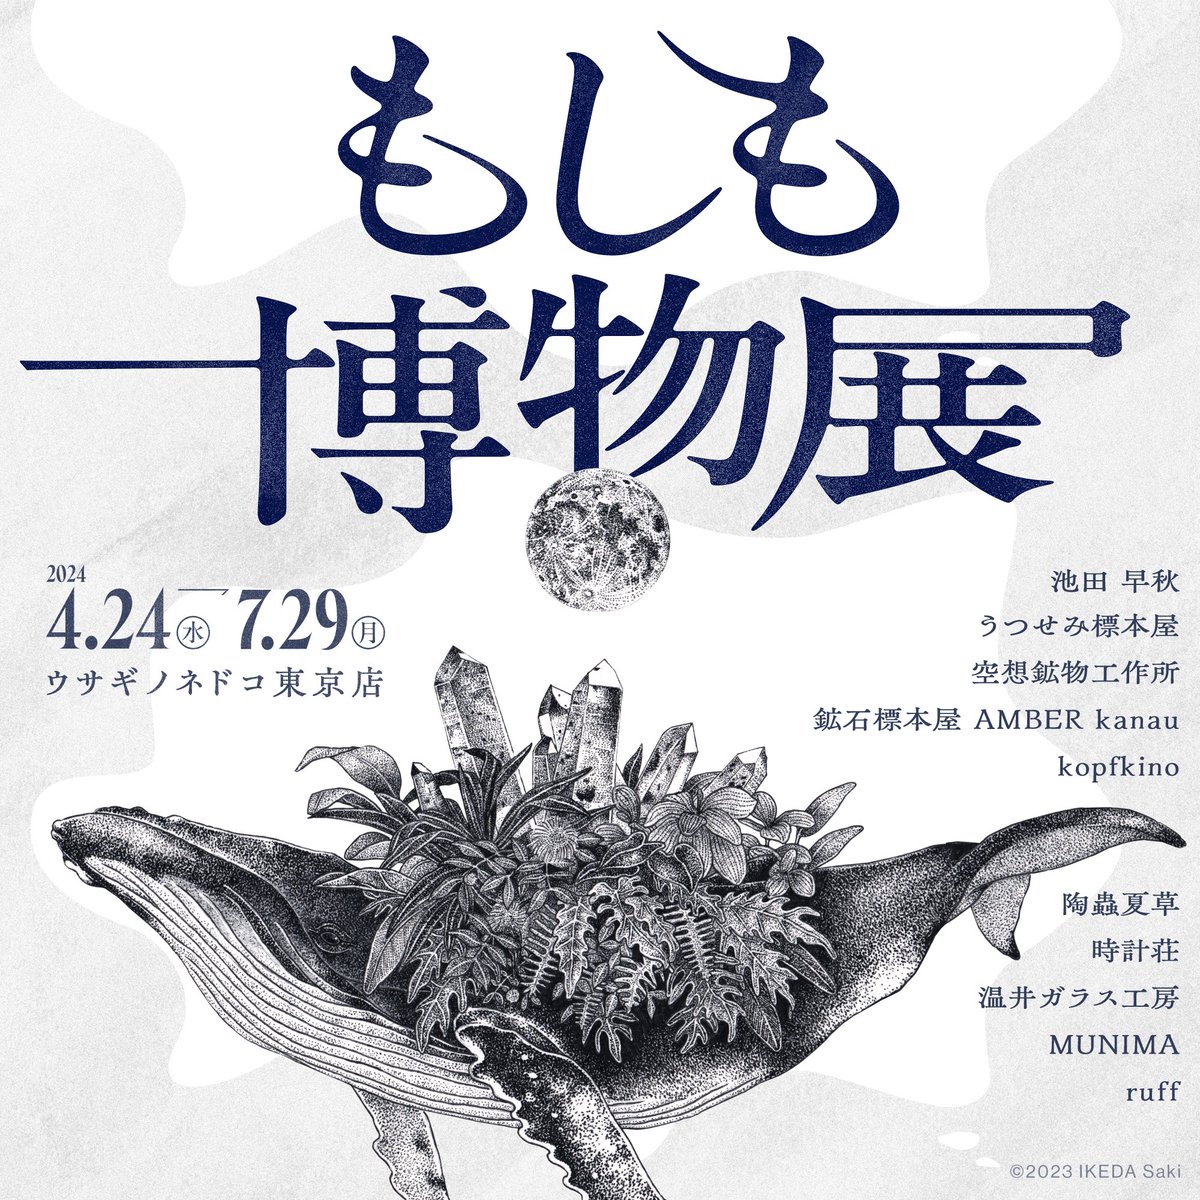 【もしも博物展販売商品】ウサギノネドコ東京店では、池田早秋さん( @_sakikeda )の作品を販売しています。ご紹介の作品は、「ポストカード/結晶植物」。鉱物の球根から生えてくるチューリップとクロッカスのイラストが描かれたポストカードです。